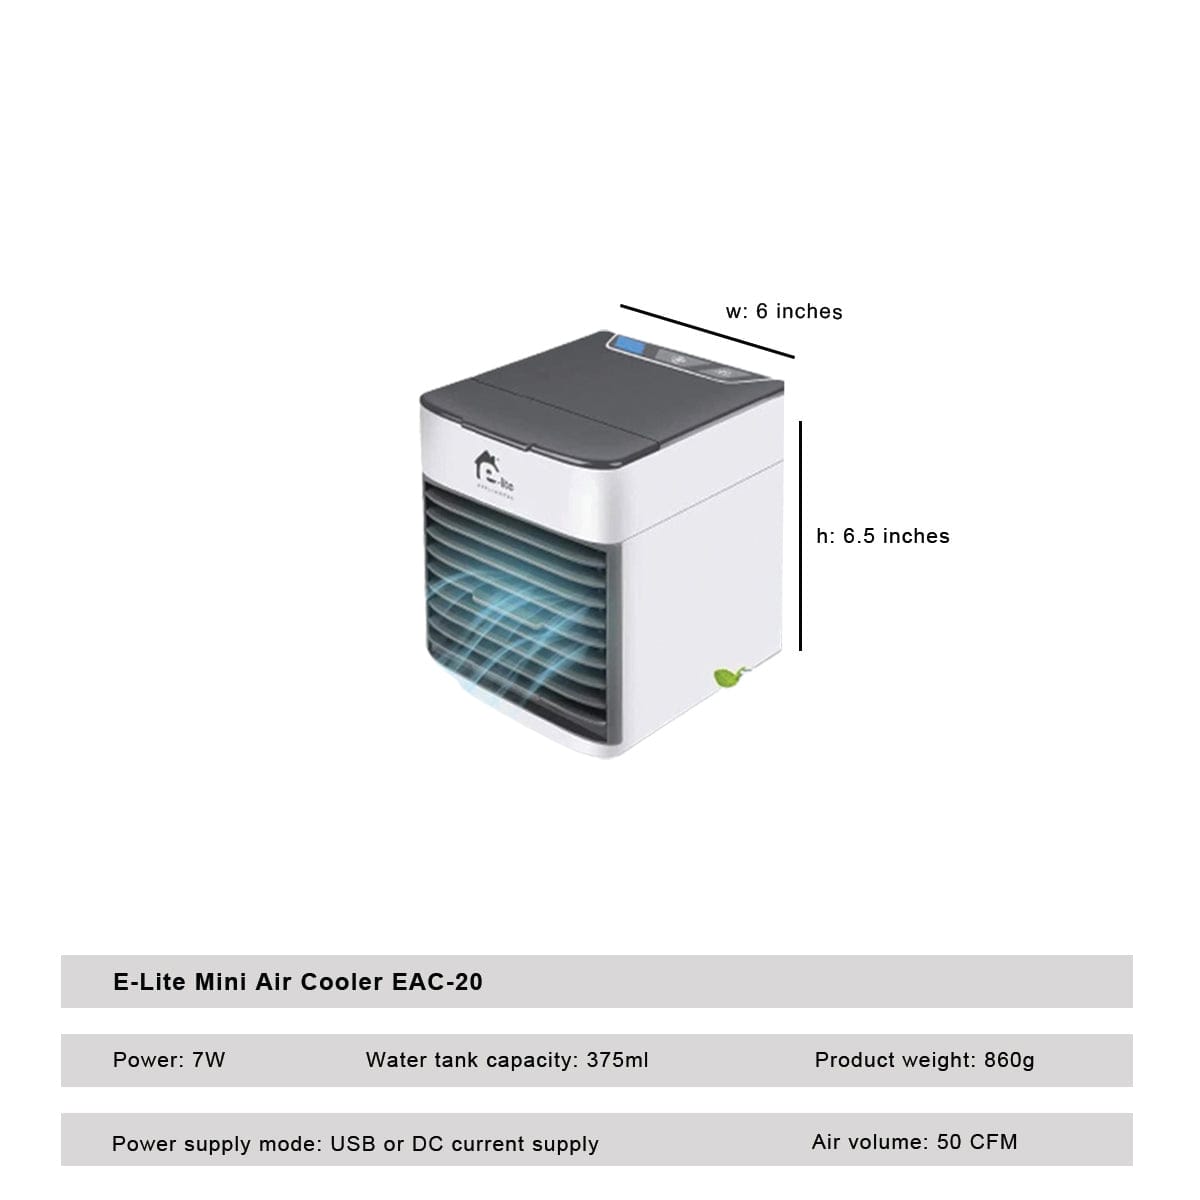 E-Lite Mini Air Cooler EAC-20